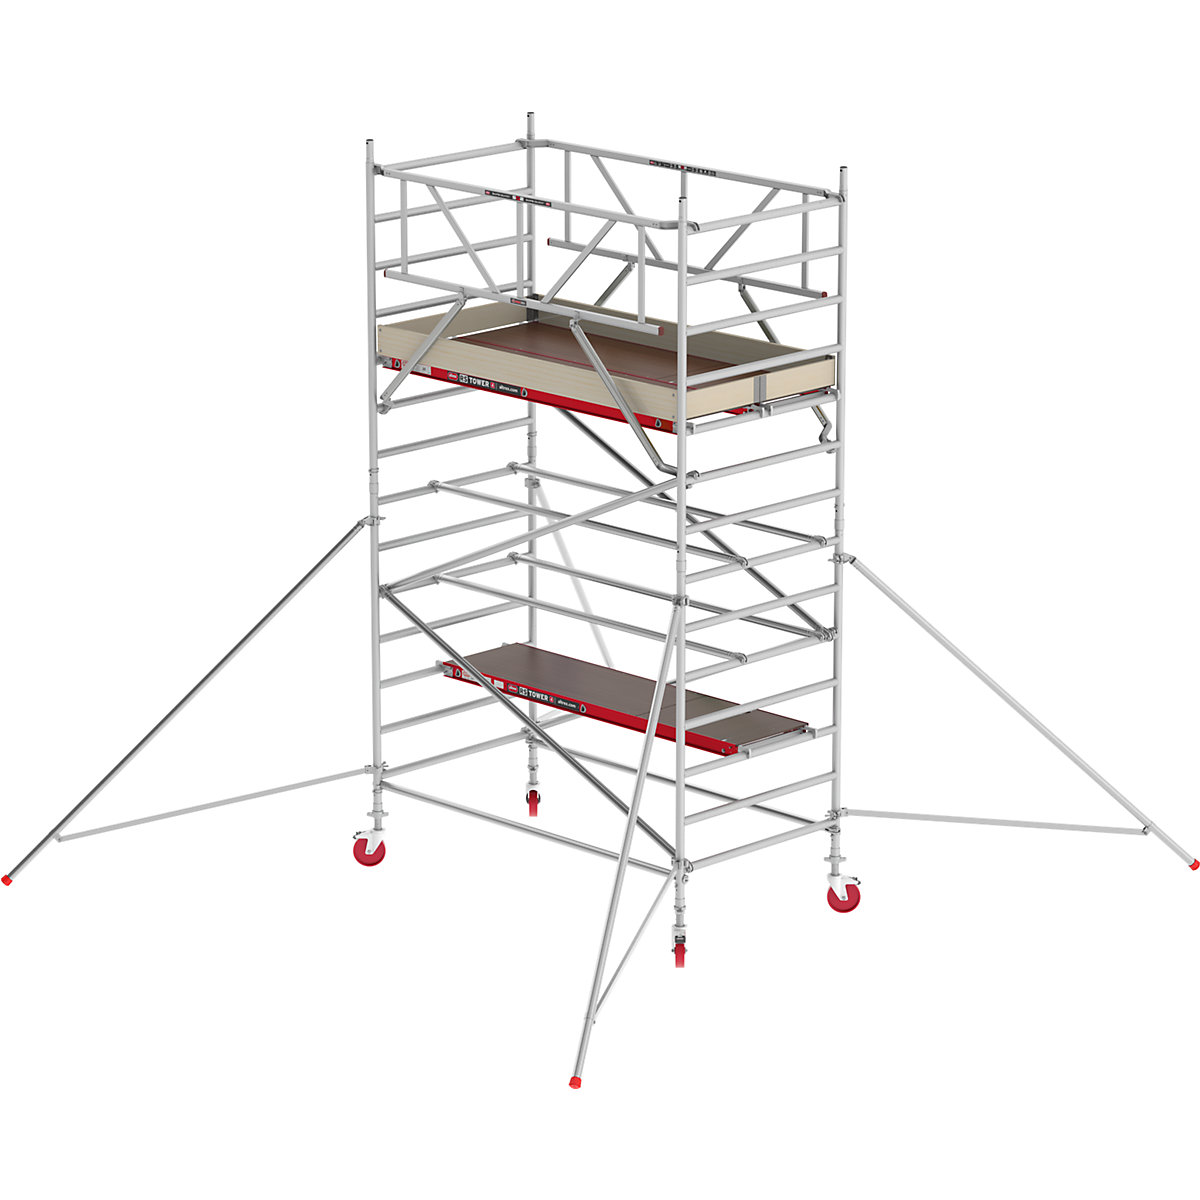 Schelă mobilă RS TOWER 42 lată – Altrex, platformă din lemn, lungime 2,45 m, înălțime de lucru 5,20 m-11